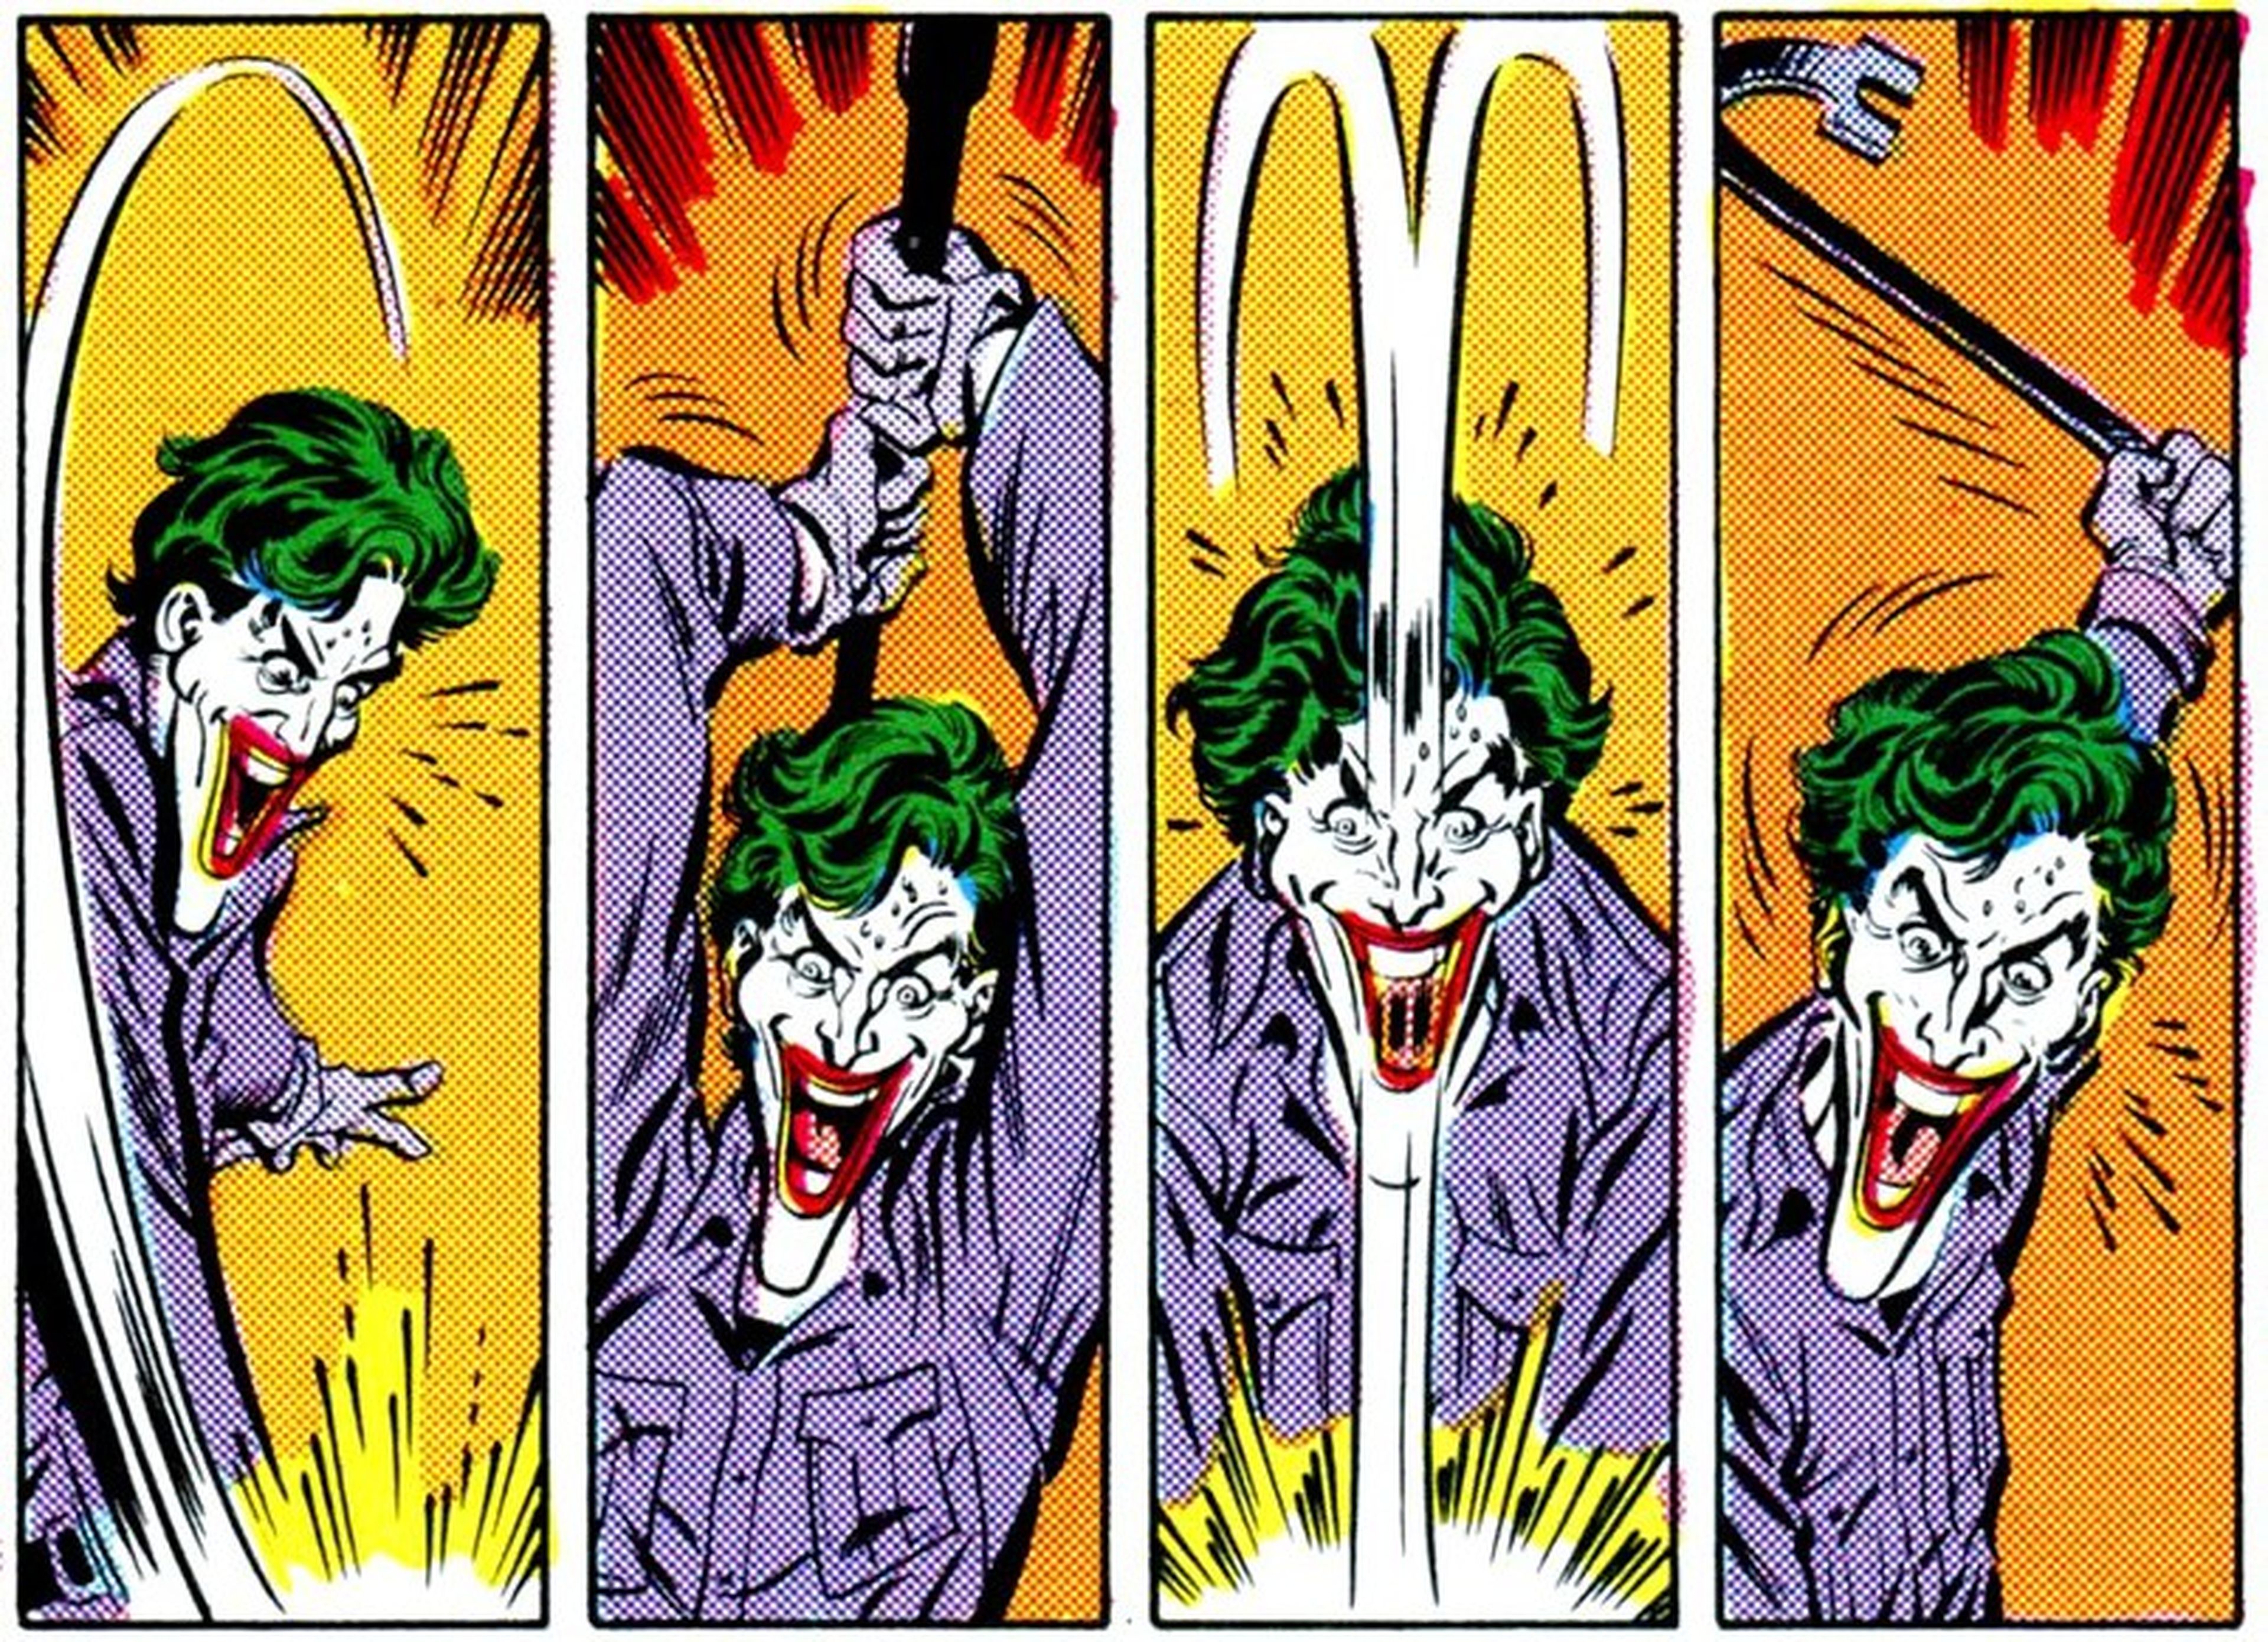 Escuadrón Suicida: ¿Quién es realmente el Joker de Jared Leto? (SPOILER)